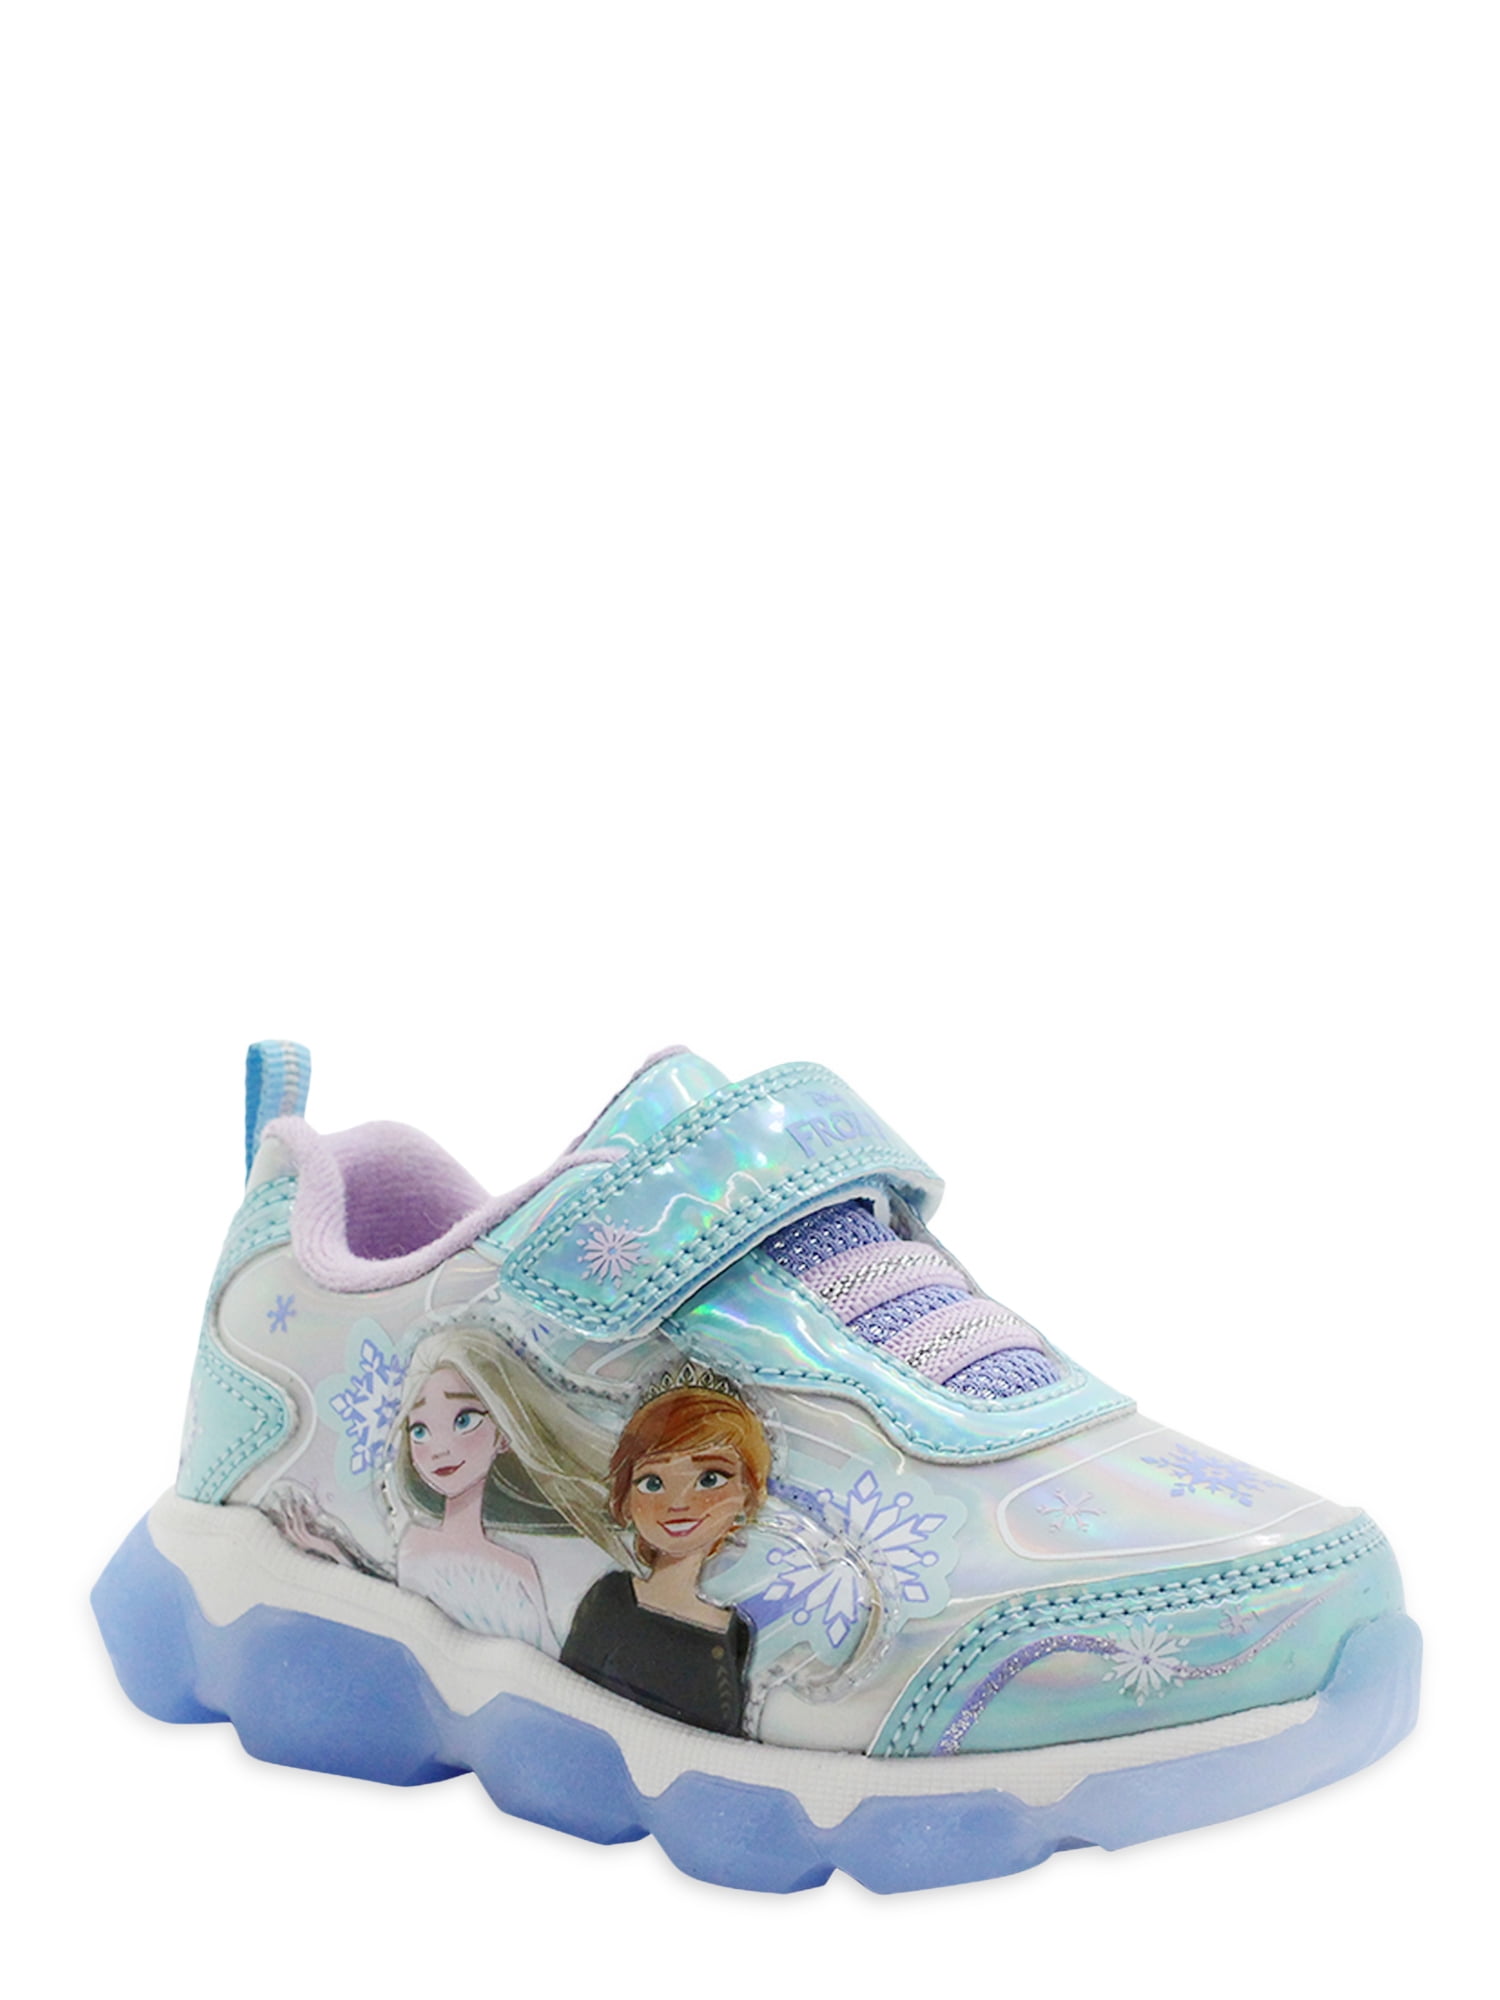 6 Disney Frozen Elsa & Anna Toddler Girls' Sandals Light-Up Sz 